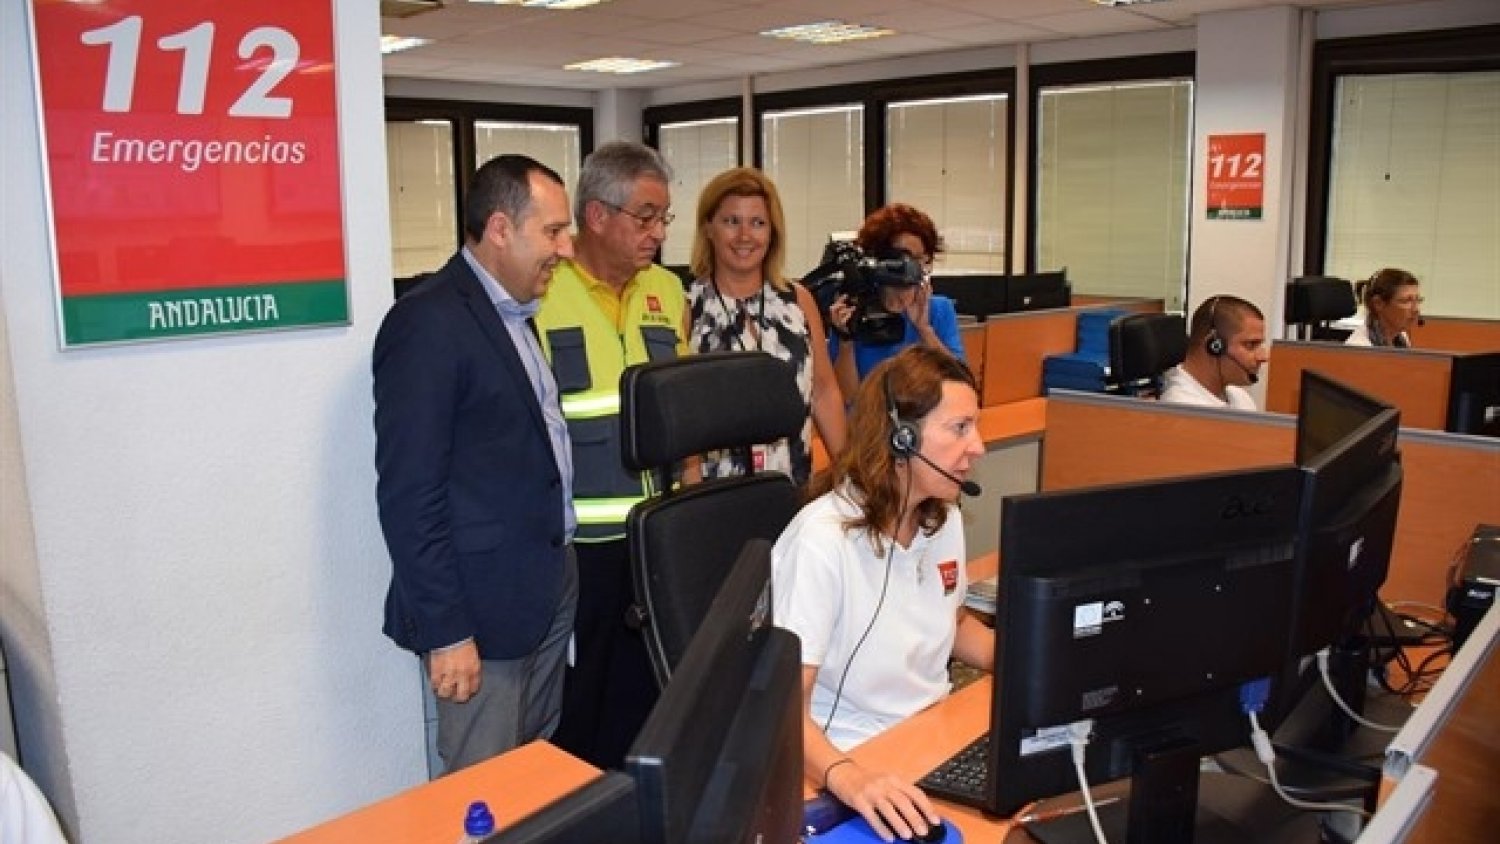 El 112 gestiona durante el Puente del Pilar más de 1.300 emergencias en la provincia de Málaga